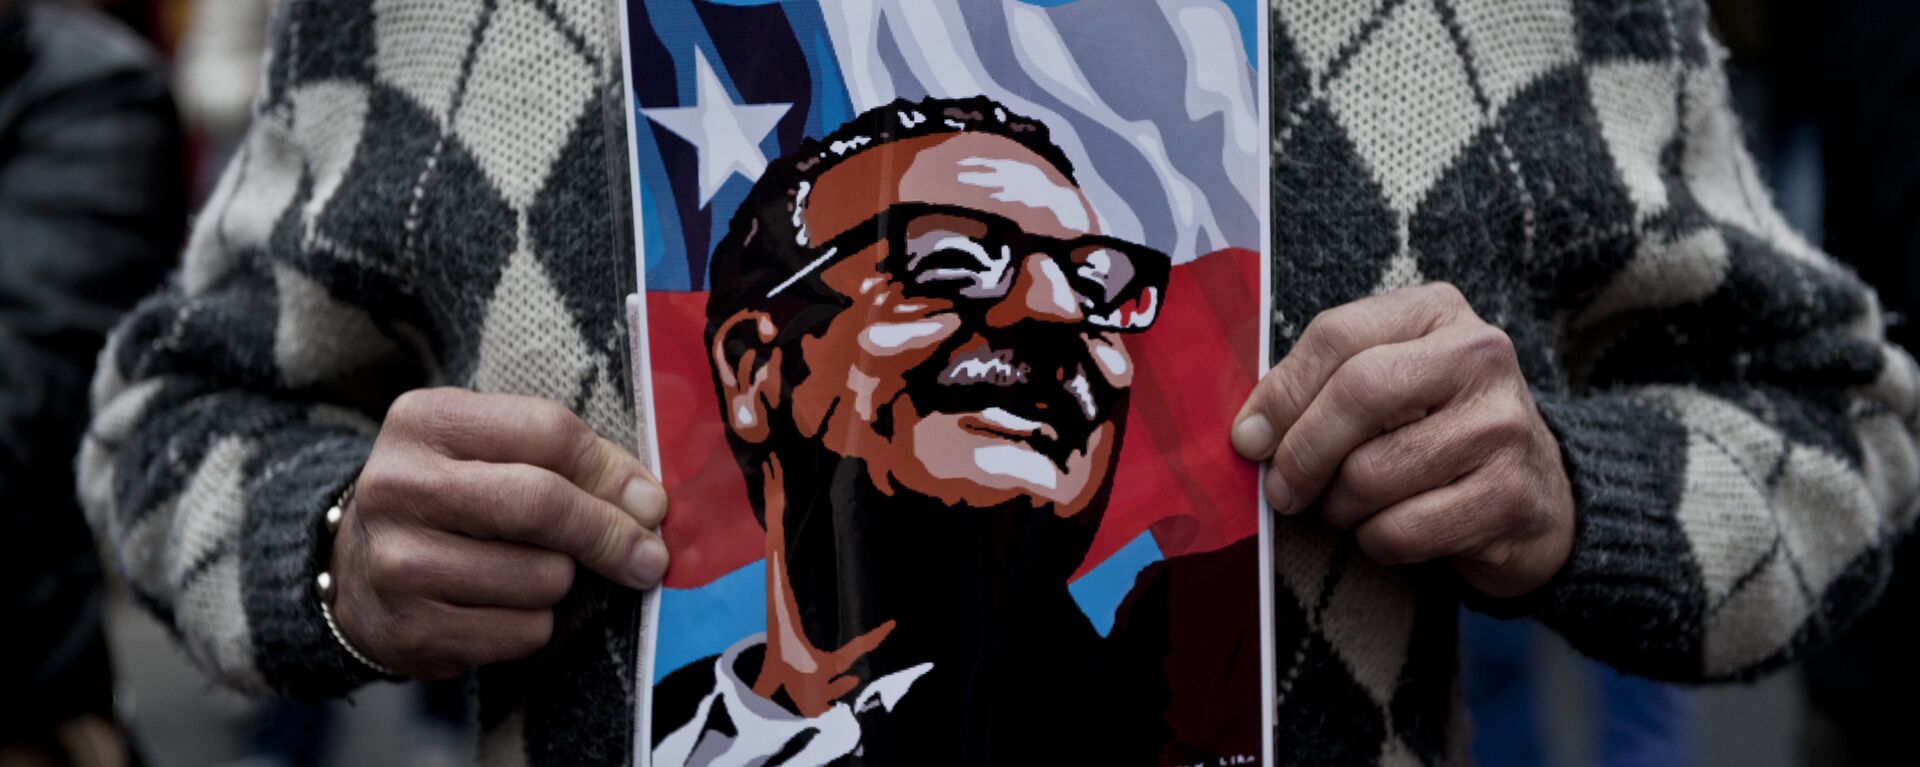 Cartel con la imagen de Salvador Allende, expresidente de Chile (1970-1973) - Sputnik Mundo, 1920, 11.09.2019